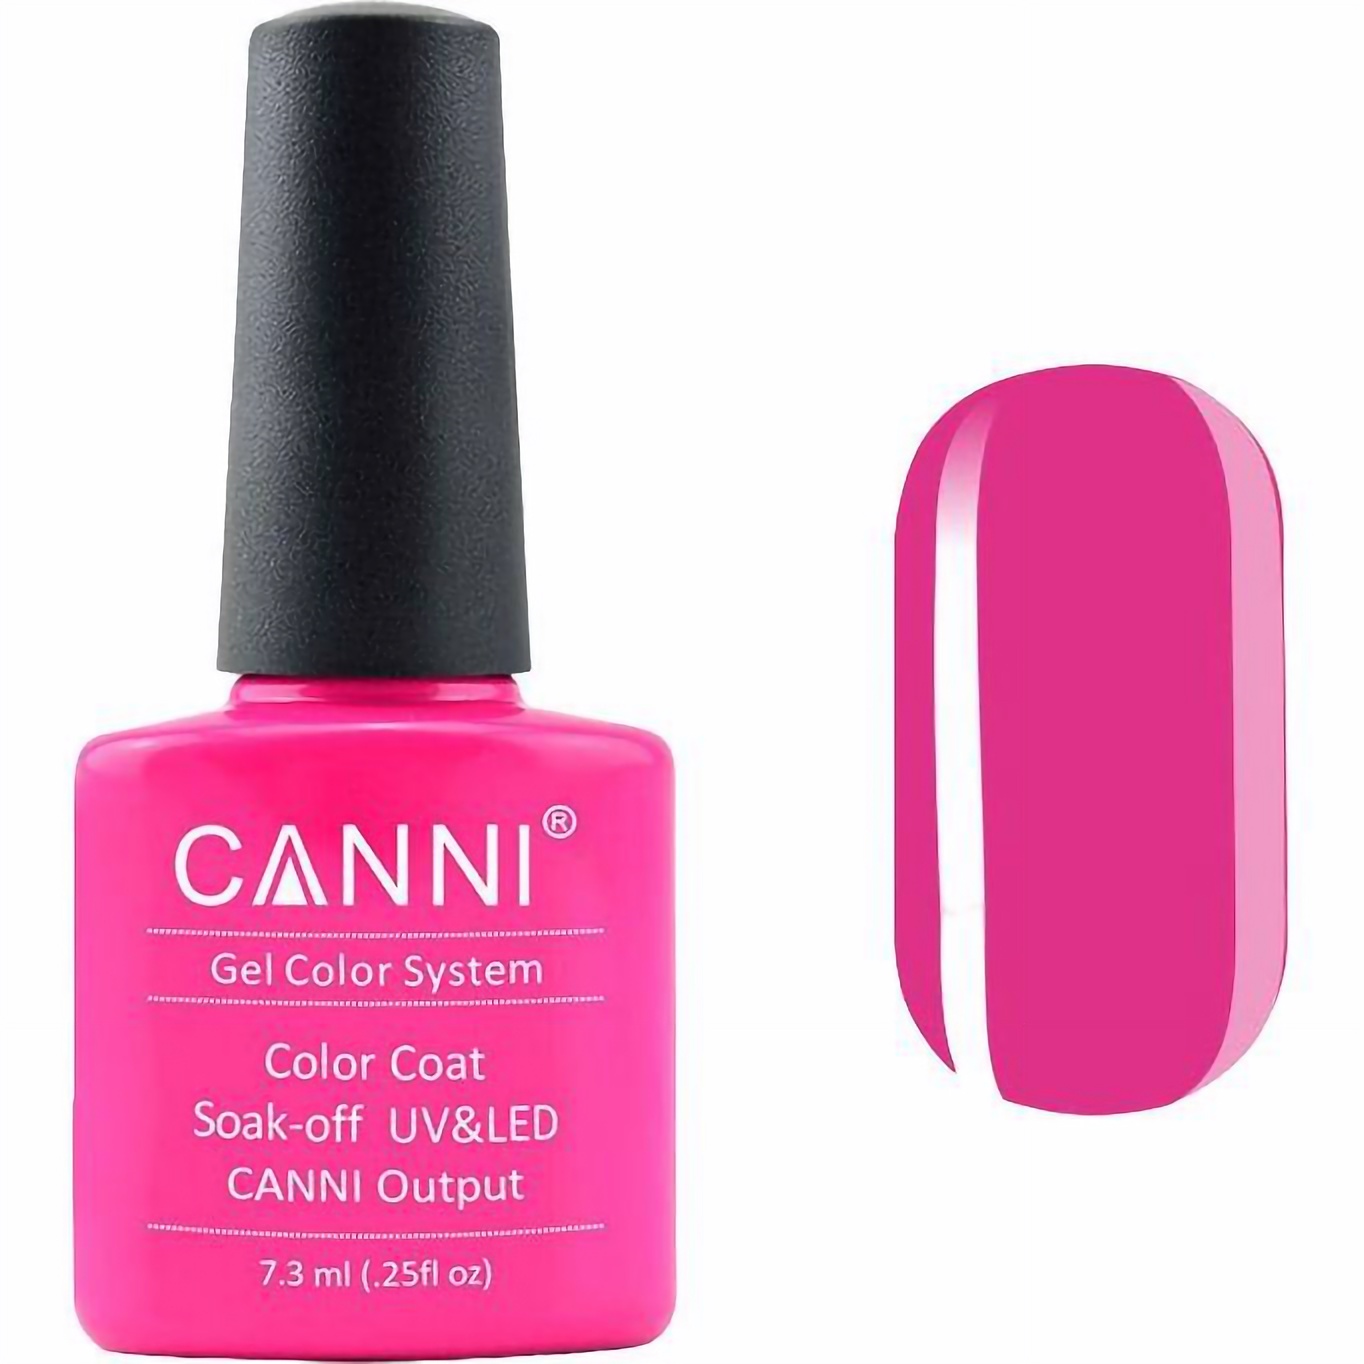 Гель-лак Canni Color Coat Soak-off UV&LED 51 малиновий 7.3 мл - фото 1